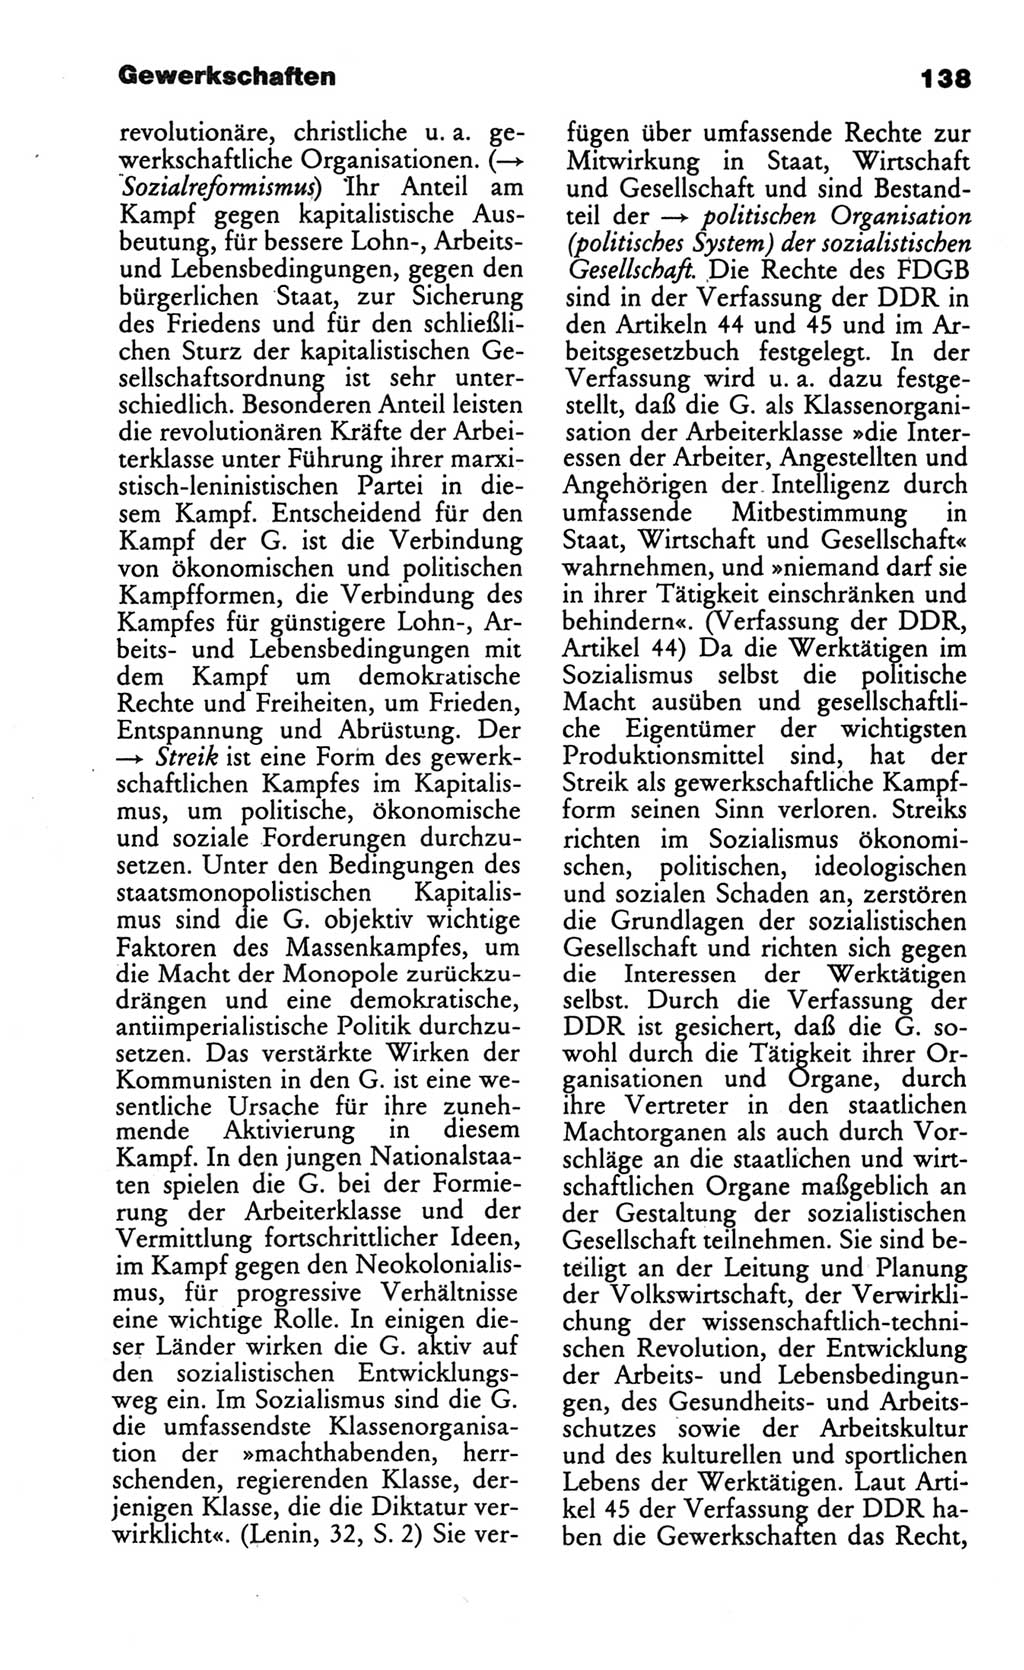 Wörterbuch des wissenschaftlichen Kommunismus [Deutsche Demokratische Republik (DDR)] 1986, Seite 138 (Wb. wiss. Komm. DDR 1986, S. 138)